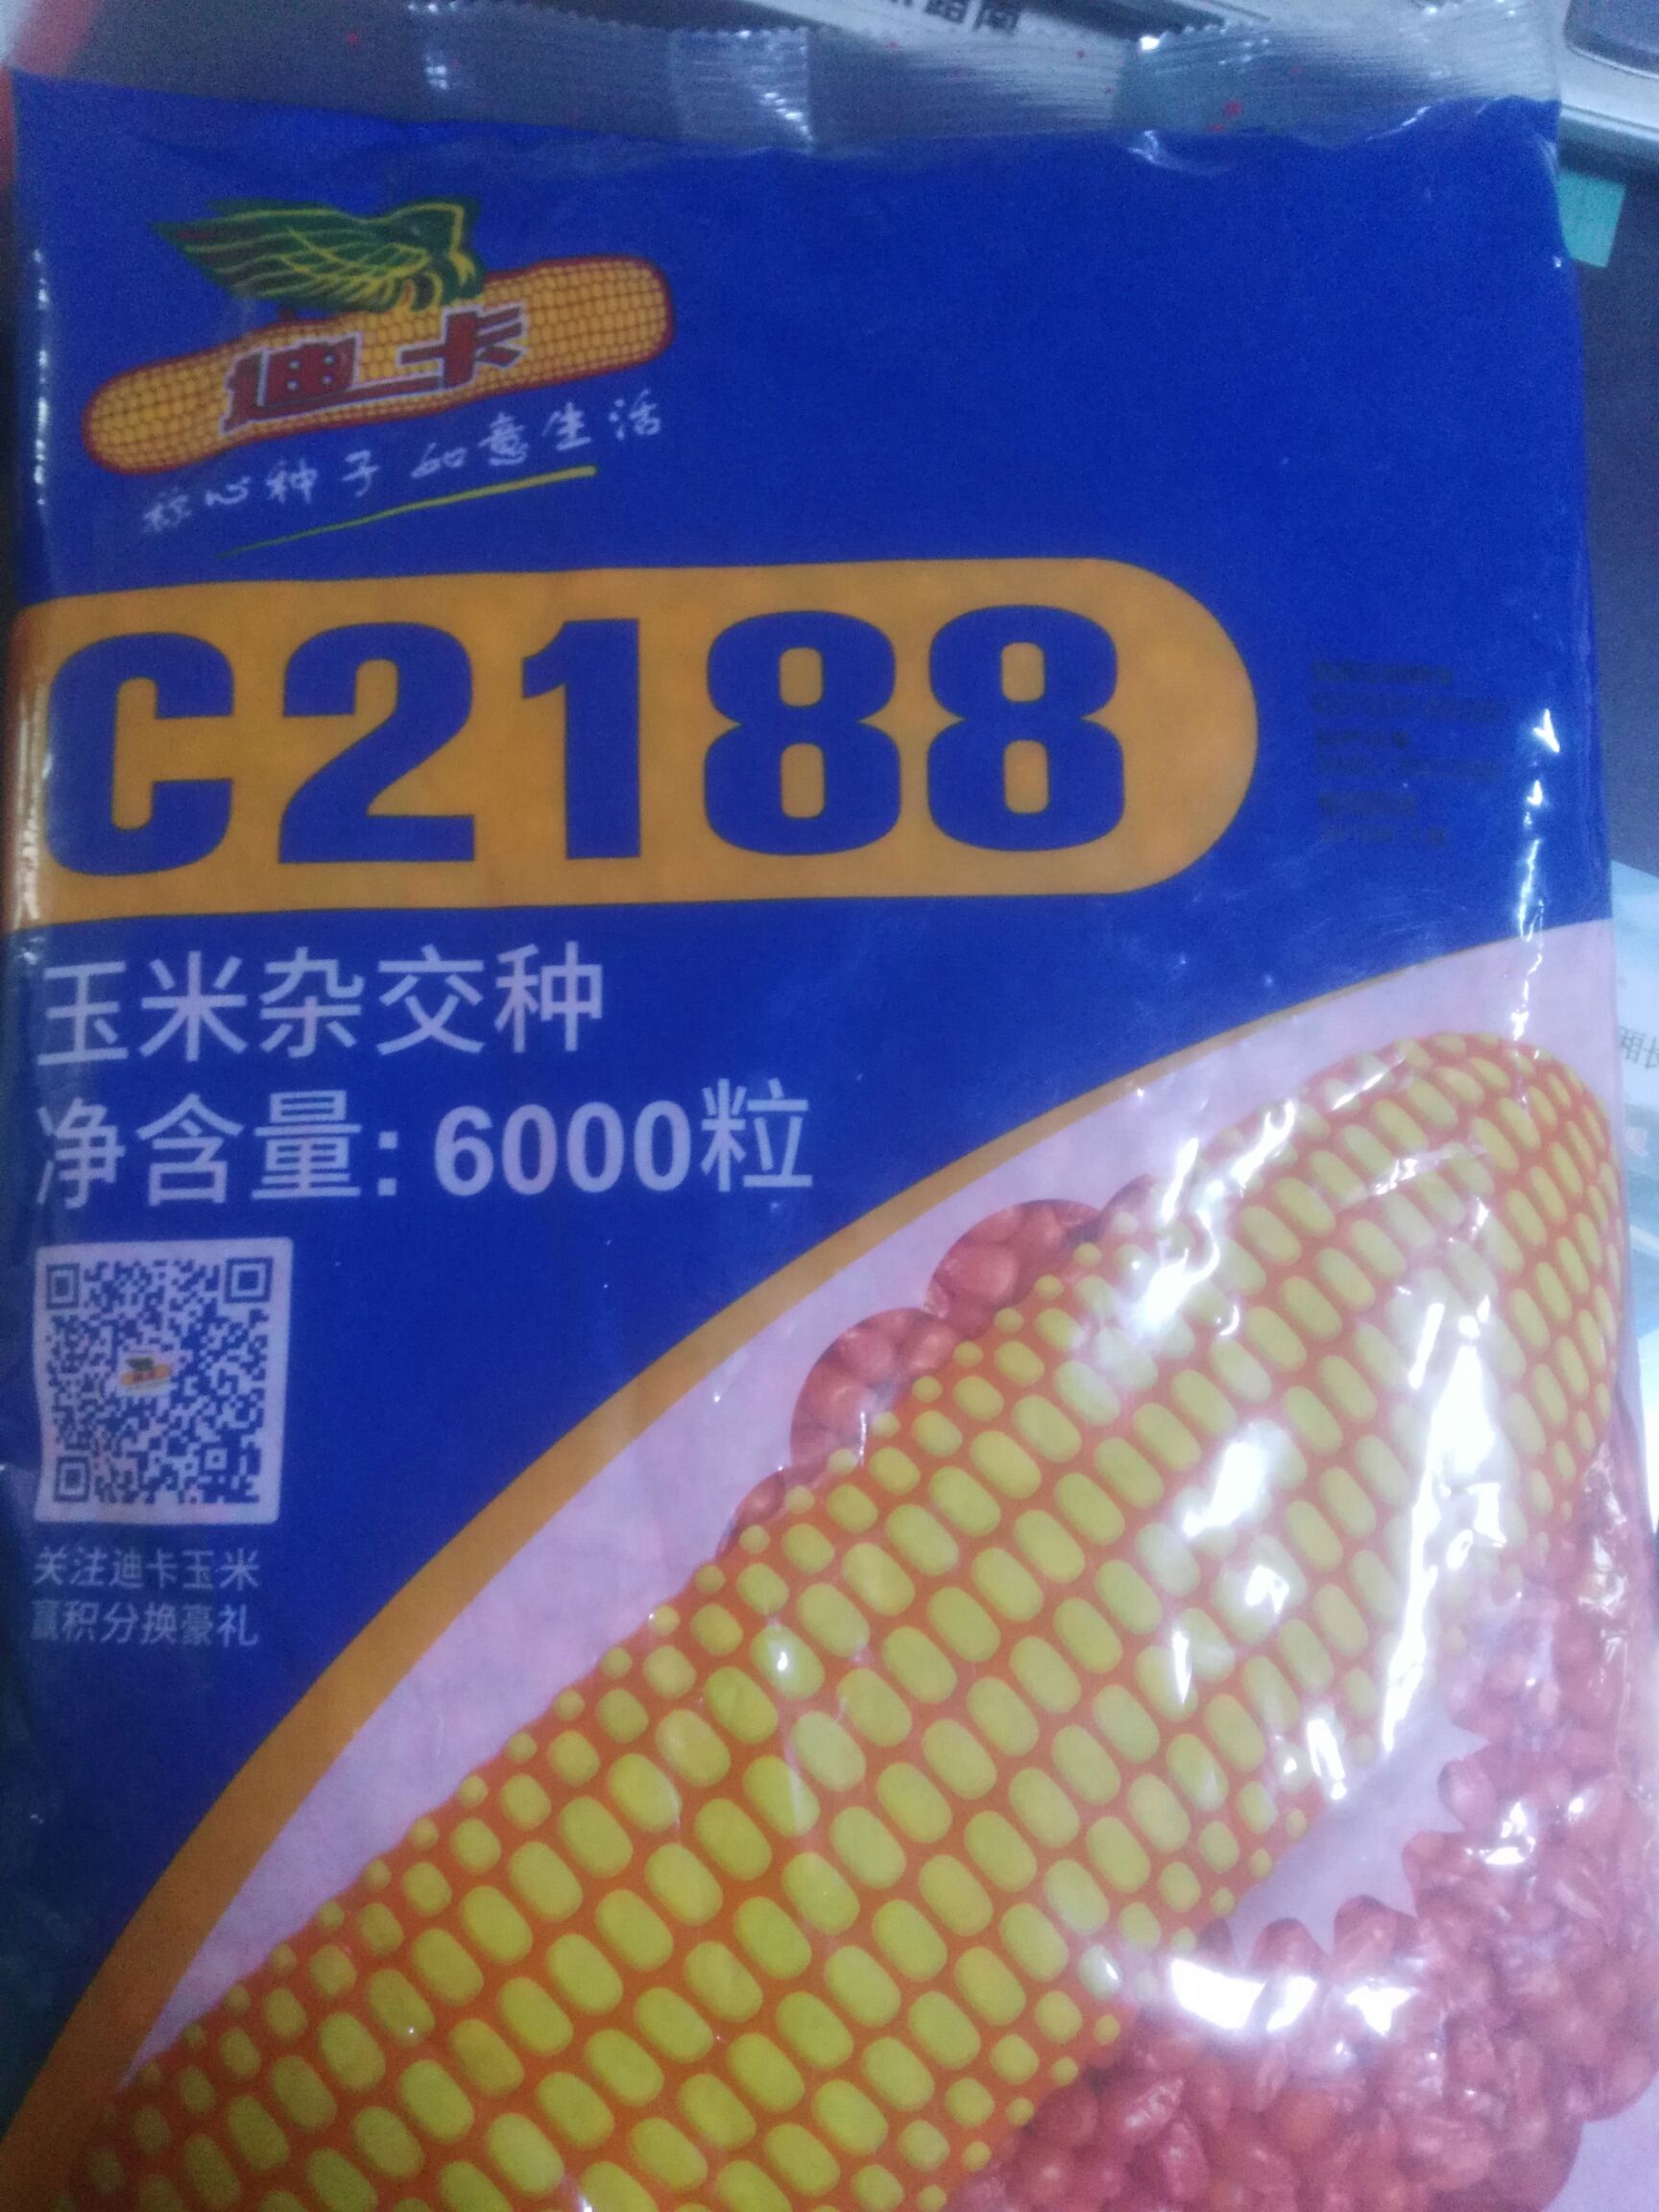 供应大厅  种子种苗  玉米种子   收藏 分享 价格 起批量 95.